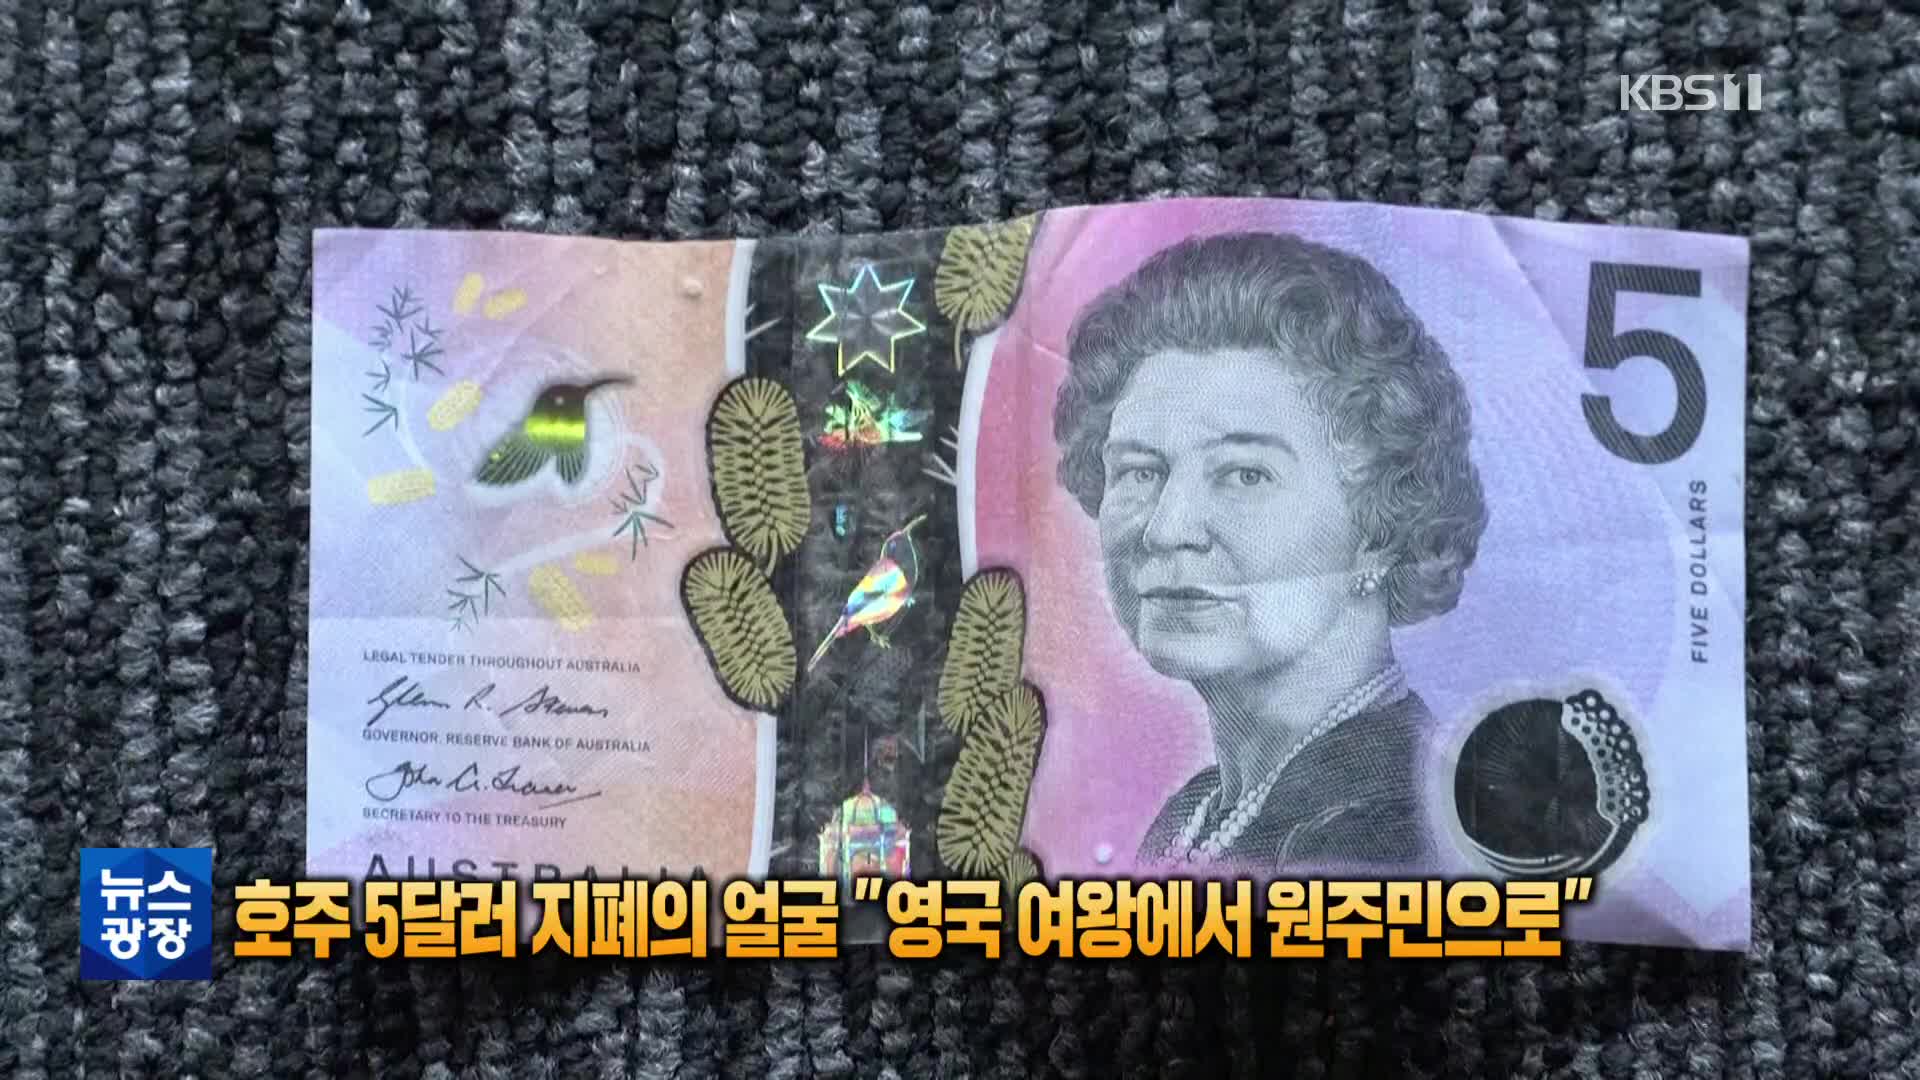 [톡톡 지구촌] 호주 5달러 지폐, 영국 여왕 얼굴에서 원주민 도안으로 대체